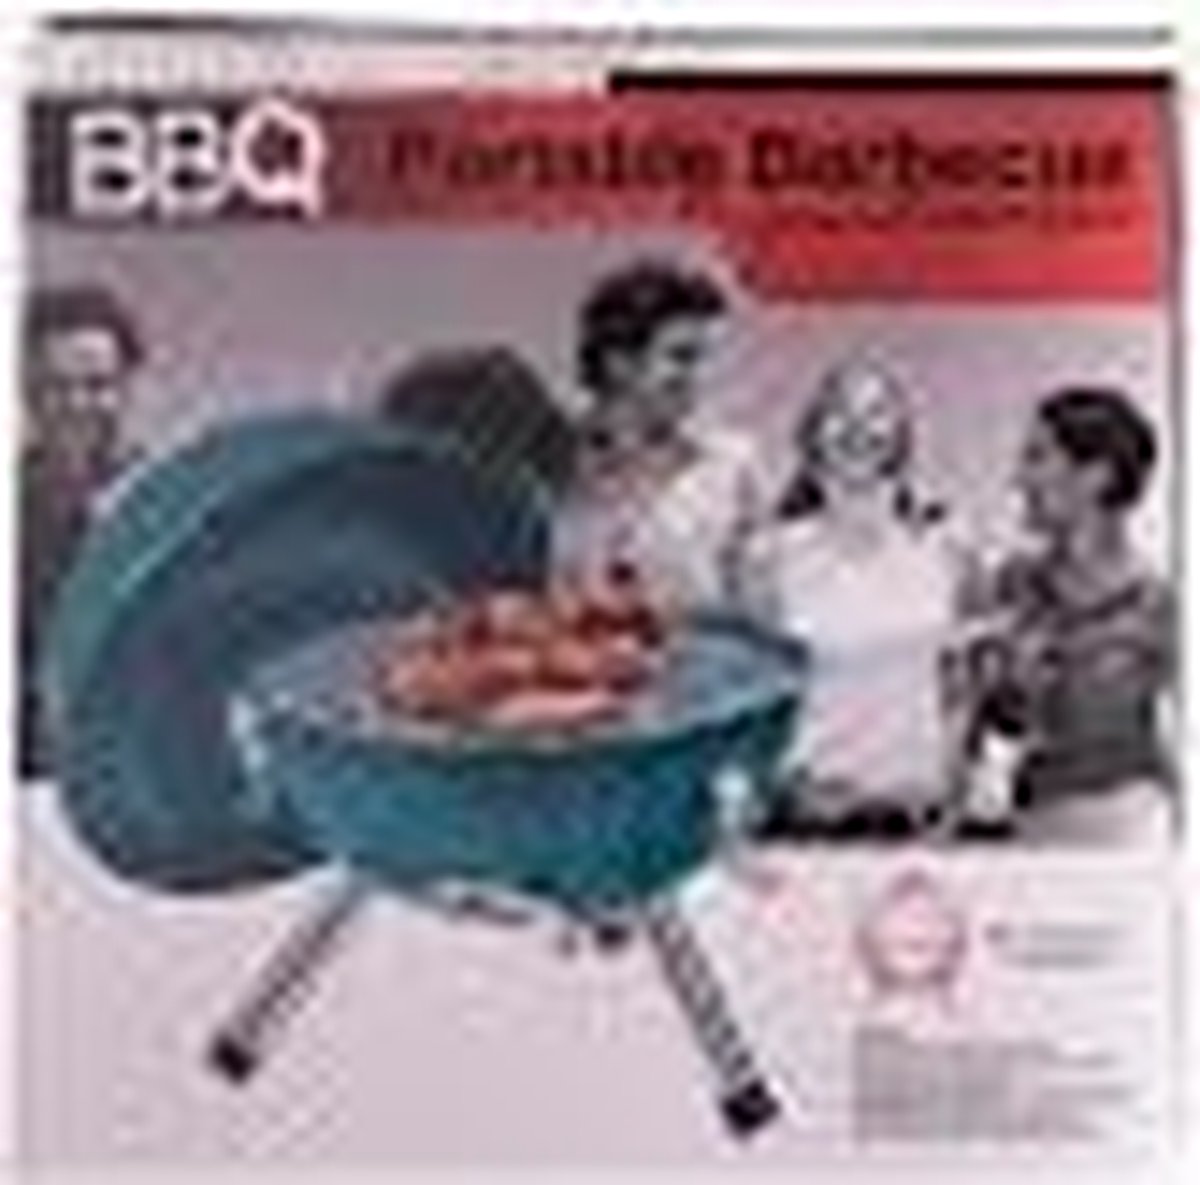 bbq - Professionele draagbare barbecue / Professional BBQ Portable Barbecue